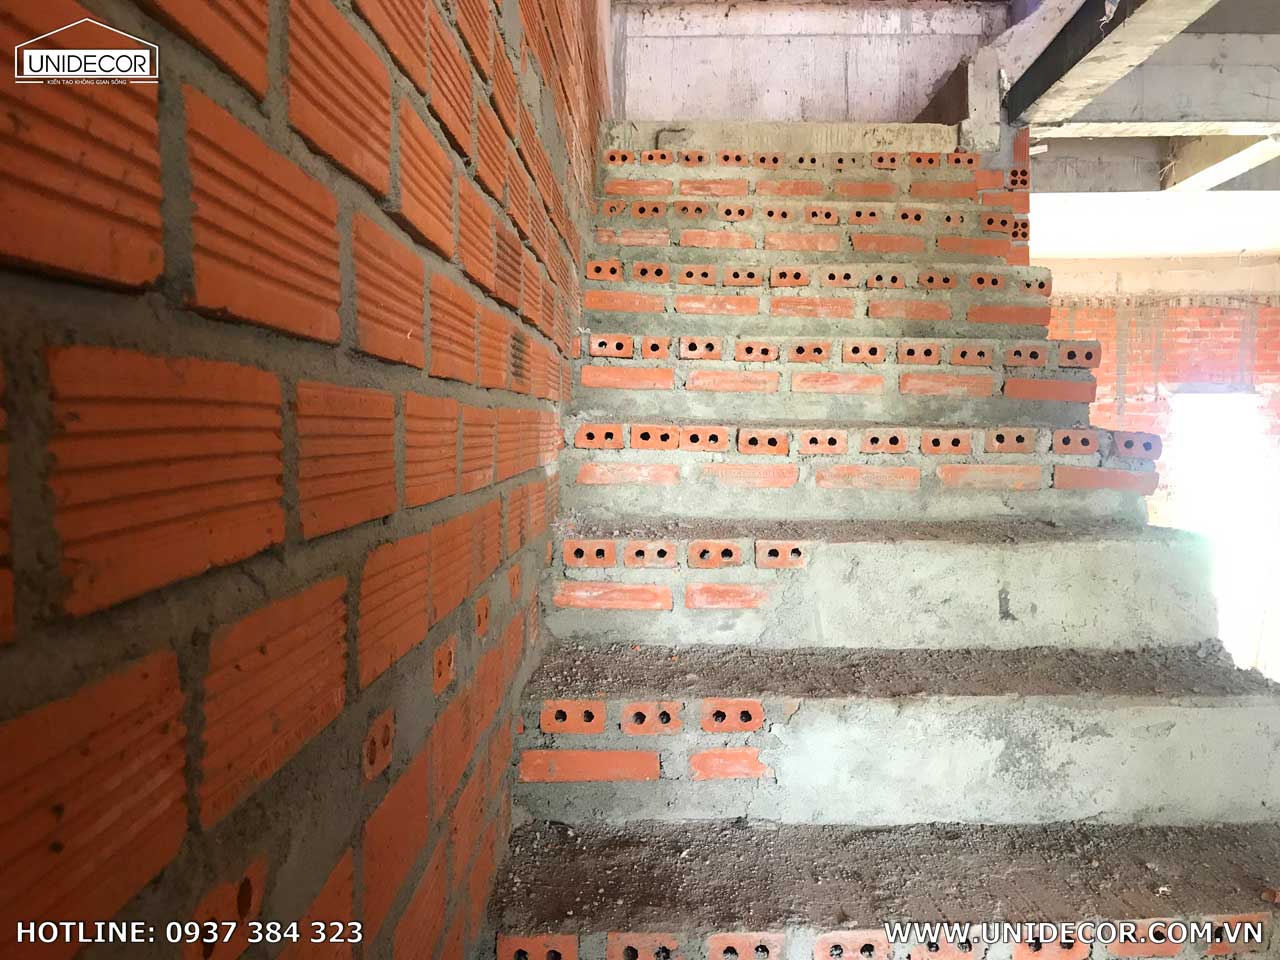 Cầu thang được xây bằng gạch thẻ